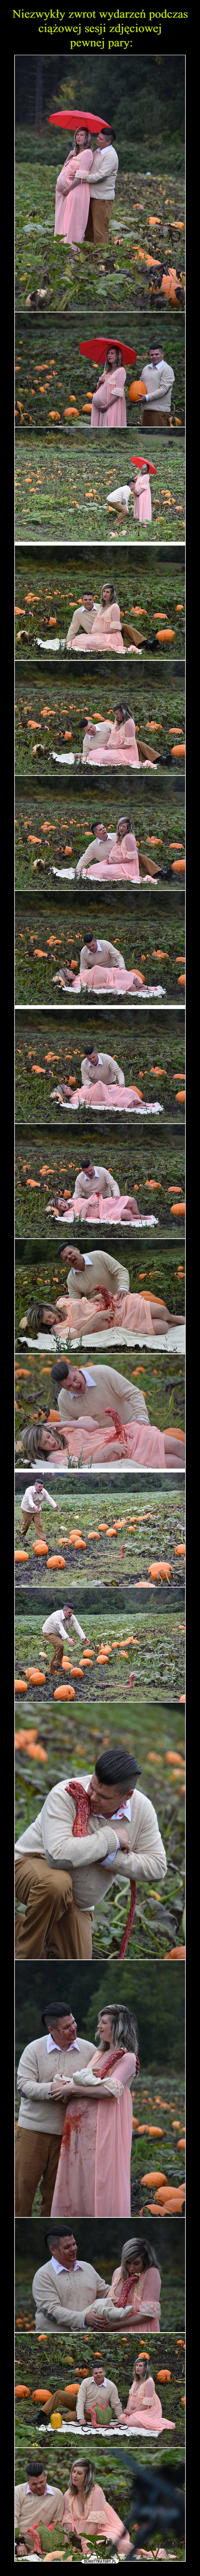 Niezwykły zwrot wydarzeń podczas ciążowej sesji zdjęciowej
 pewnej pary: